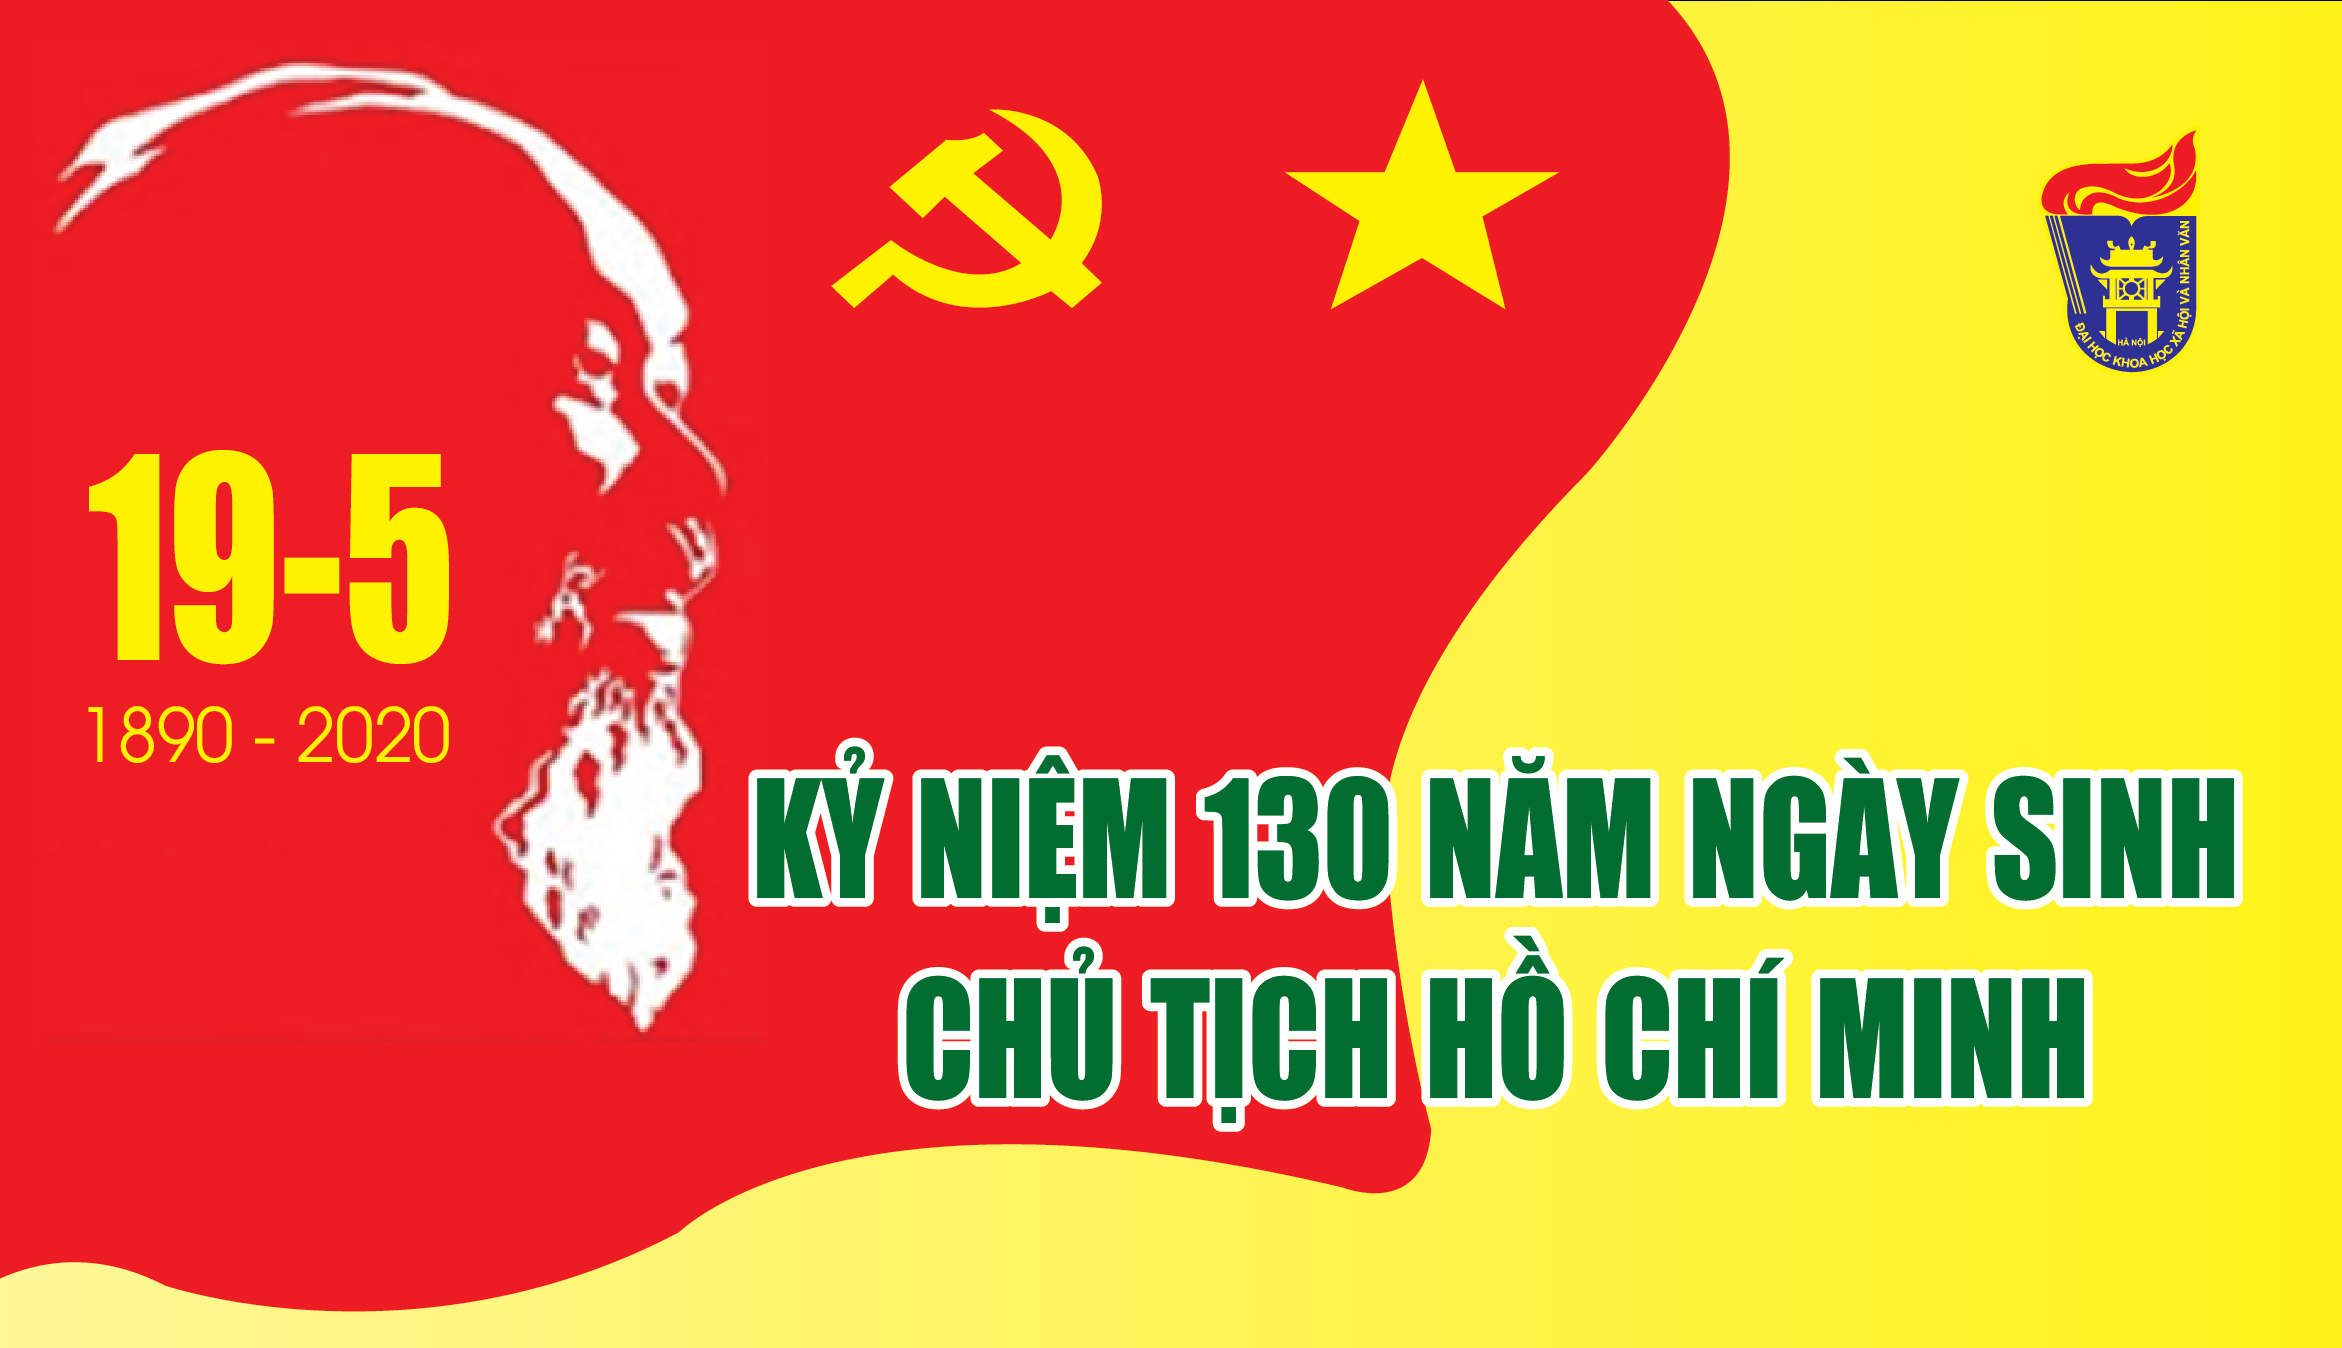 Giá trị nhân văn và vấn đề con người trong Di chúc của Chủ tịch Hồ Chí Minh